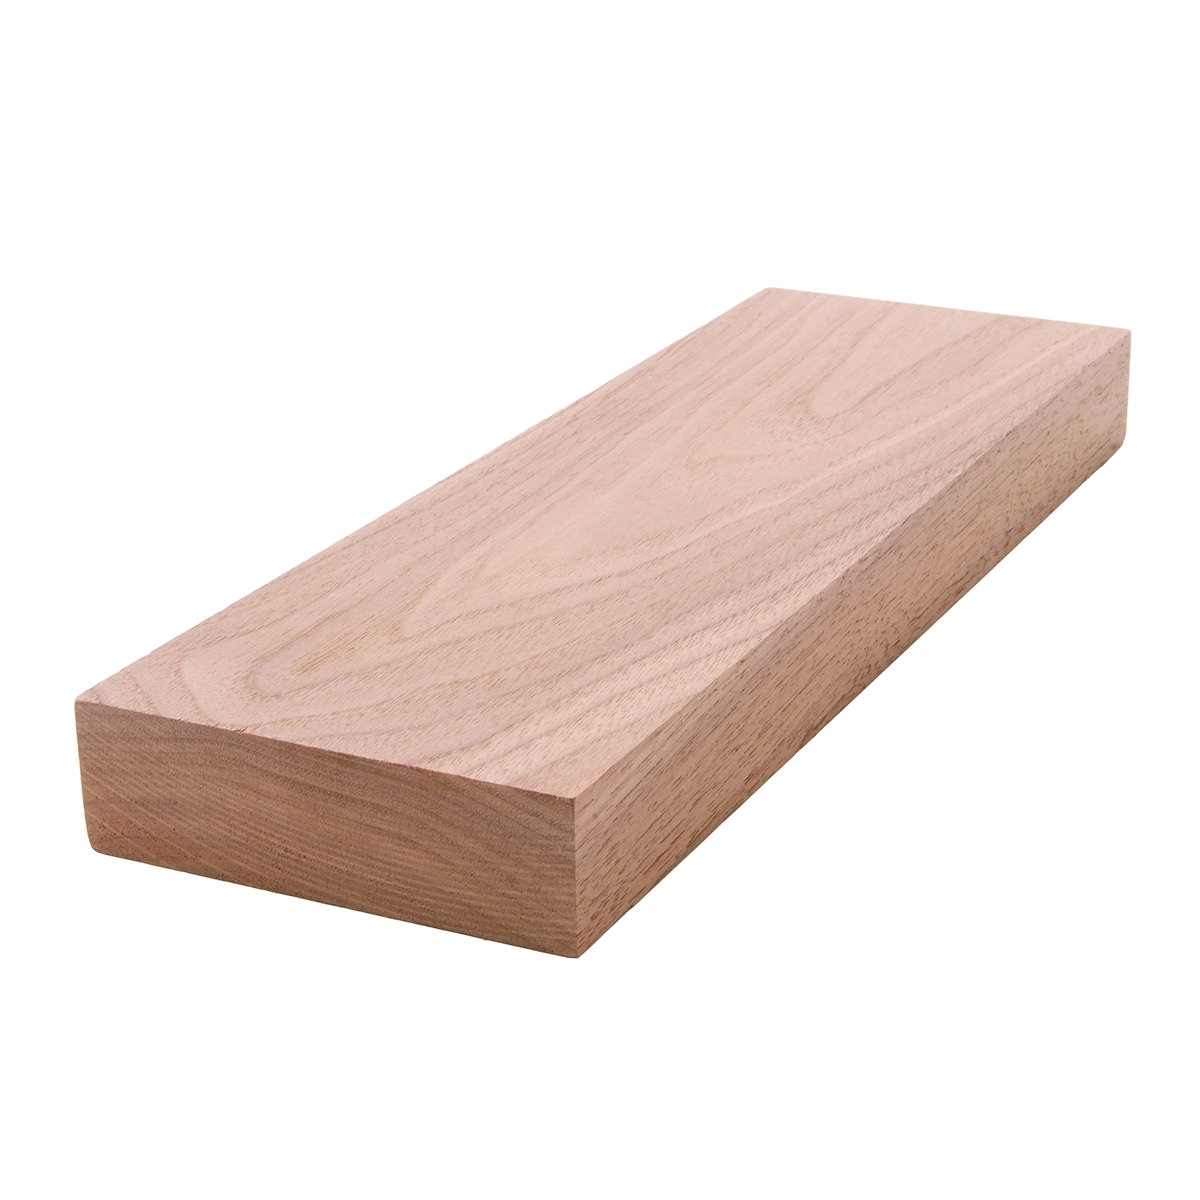 5/4x4 (1" x 31/2") Black Walnut S4S Lumber, Boards